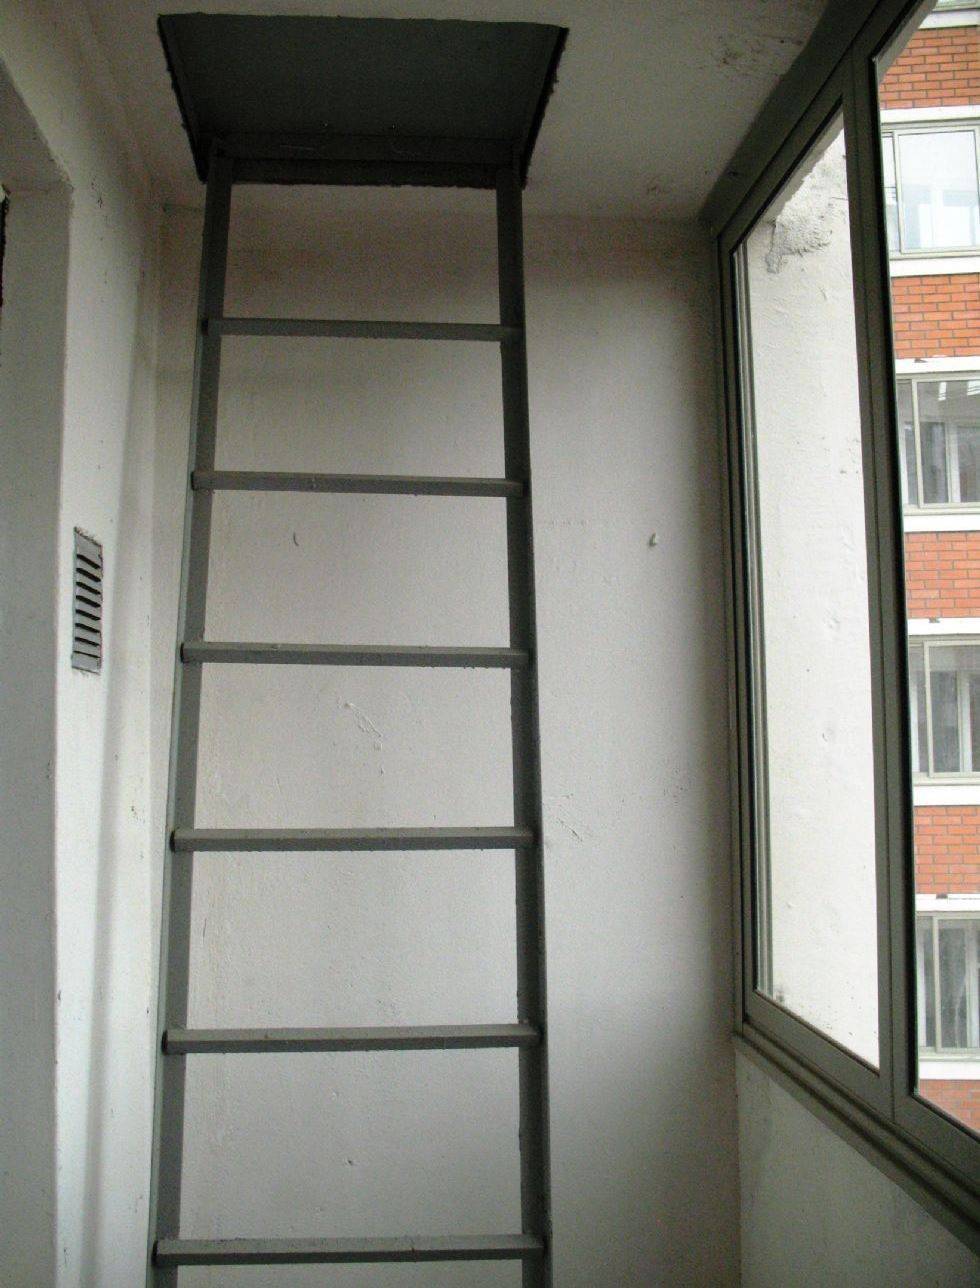 пожарная лестница на балконе дизайн идеи